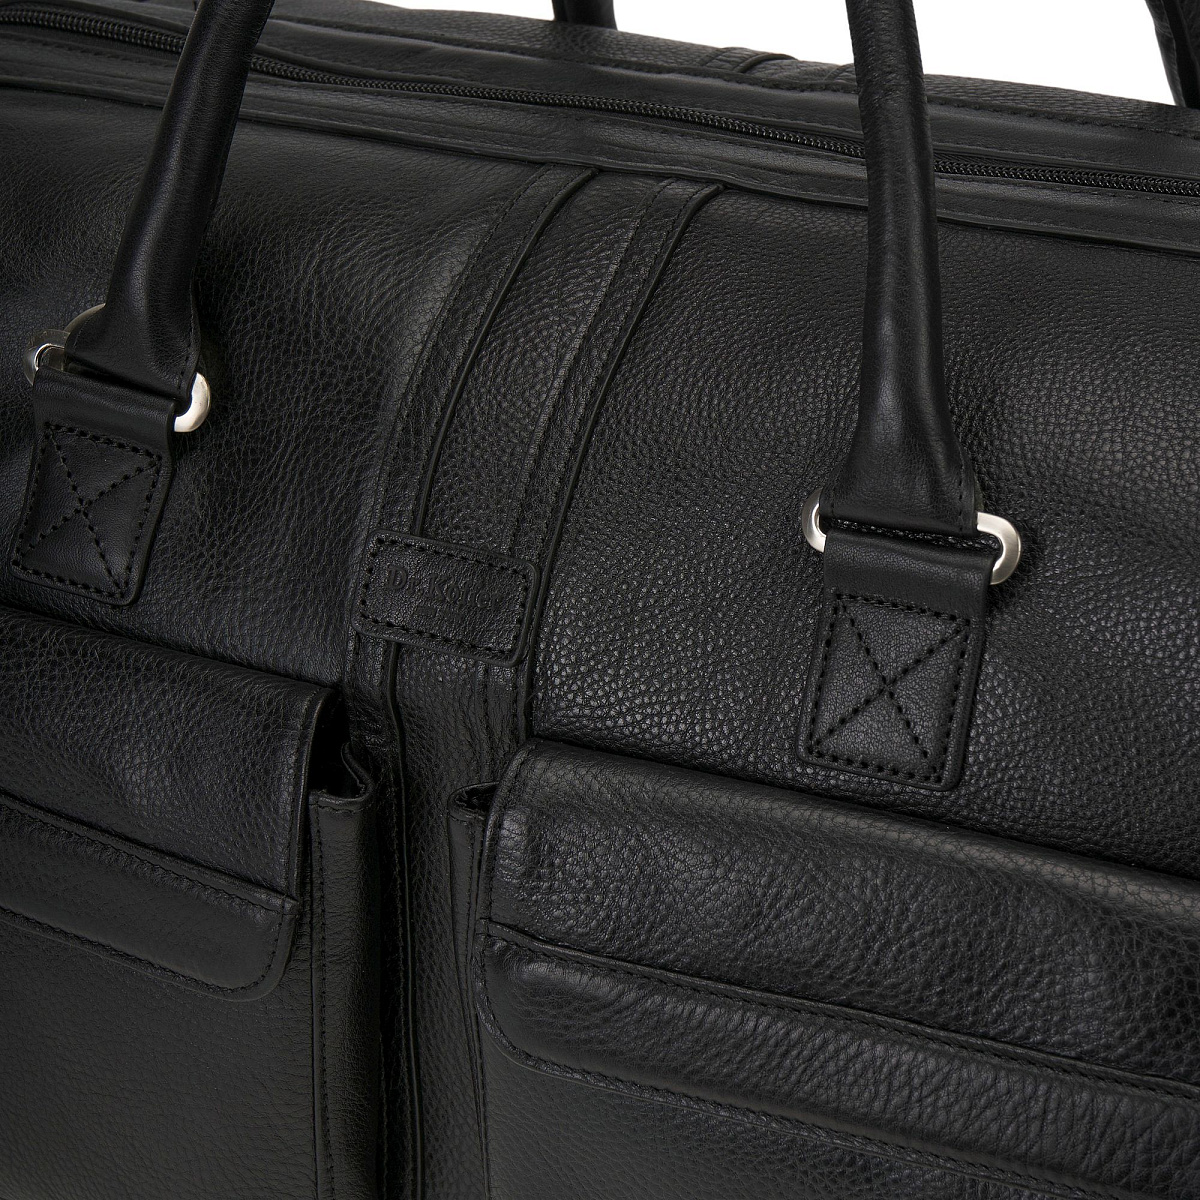 Дорожная черного цвета сумка с объемными наружными карманами Dr.Koffer B483940-02-04